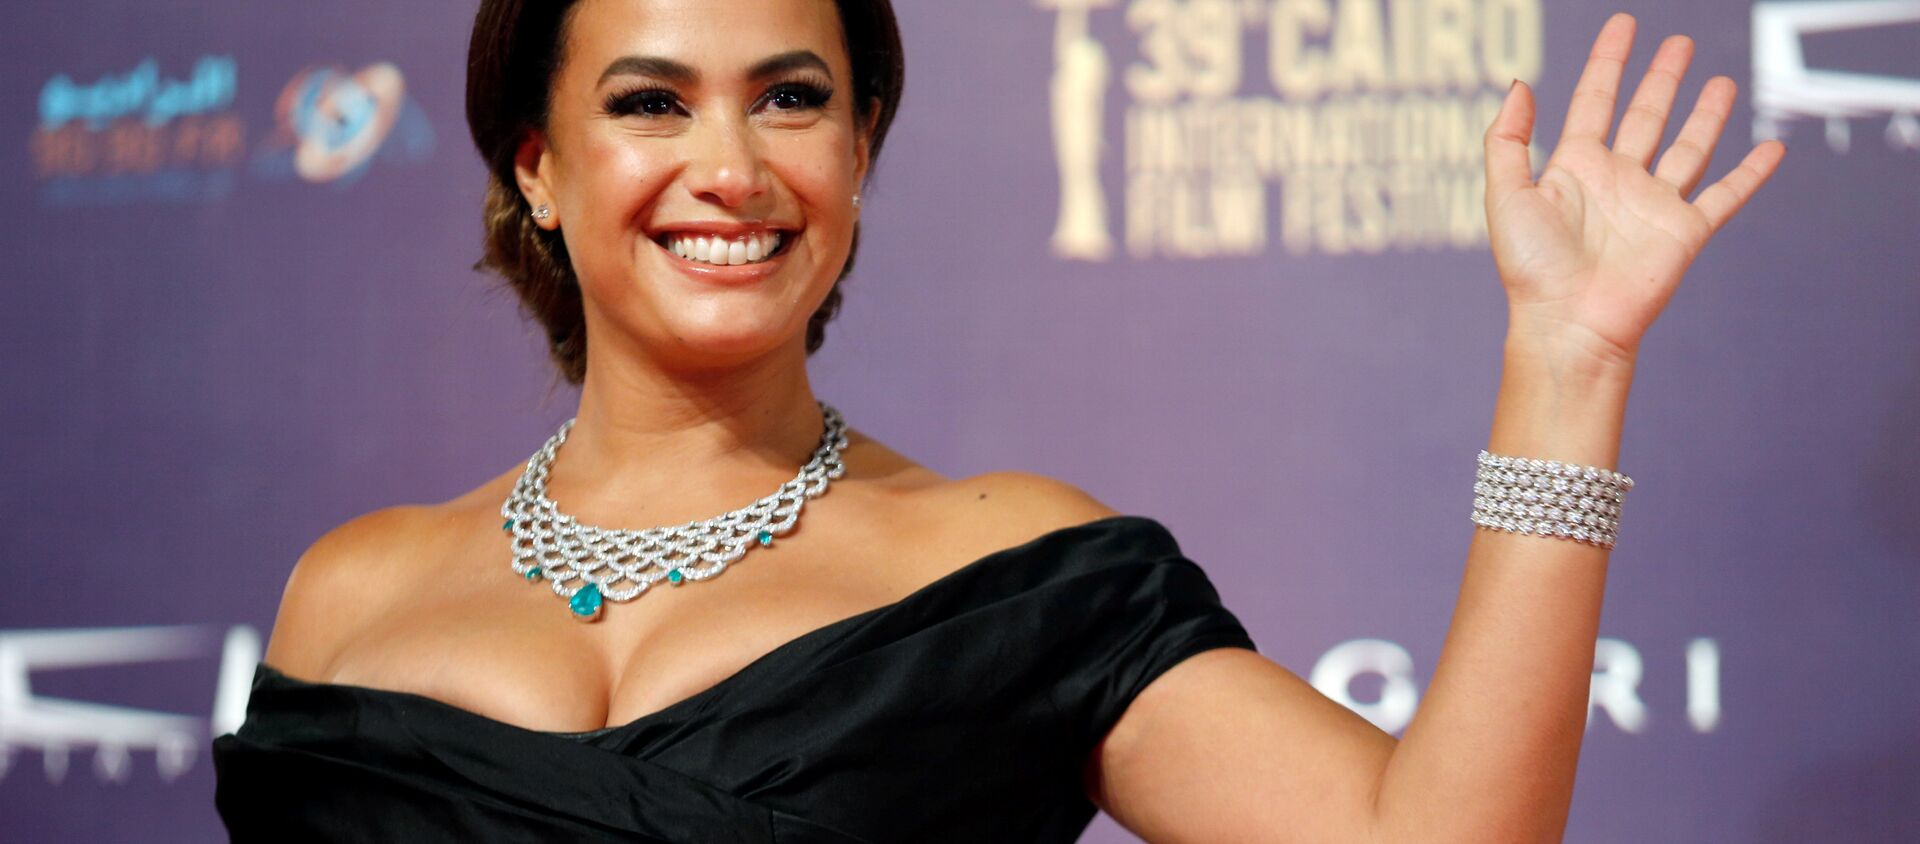  الممثلة المصرية هند صبري، خلال مهرجان القاهرة السينمائي الـ 39، مصر 21 نوفمبر/ كانون الأول 2017 - سبوتنيك عربي, 1920, 26.03.2021